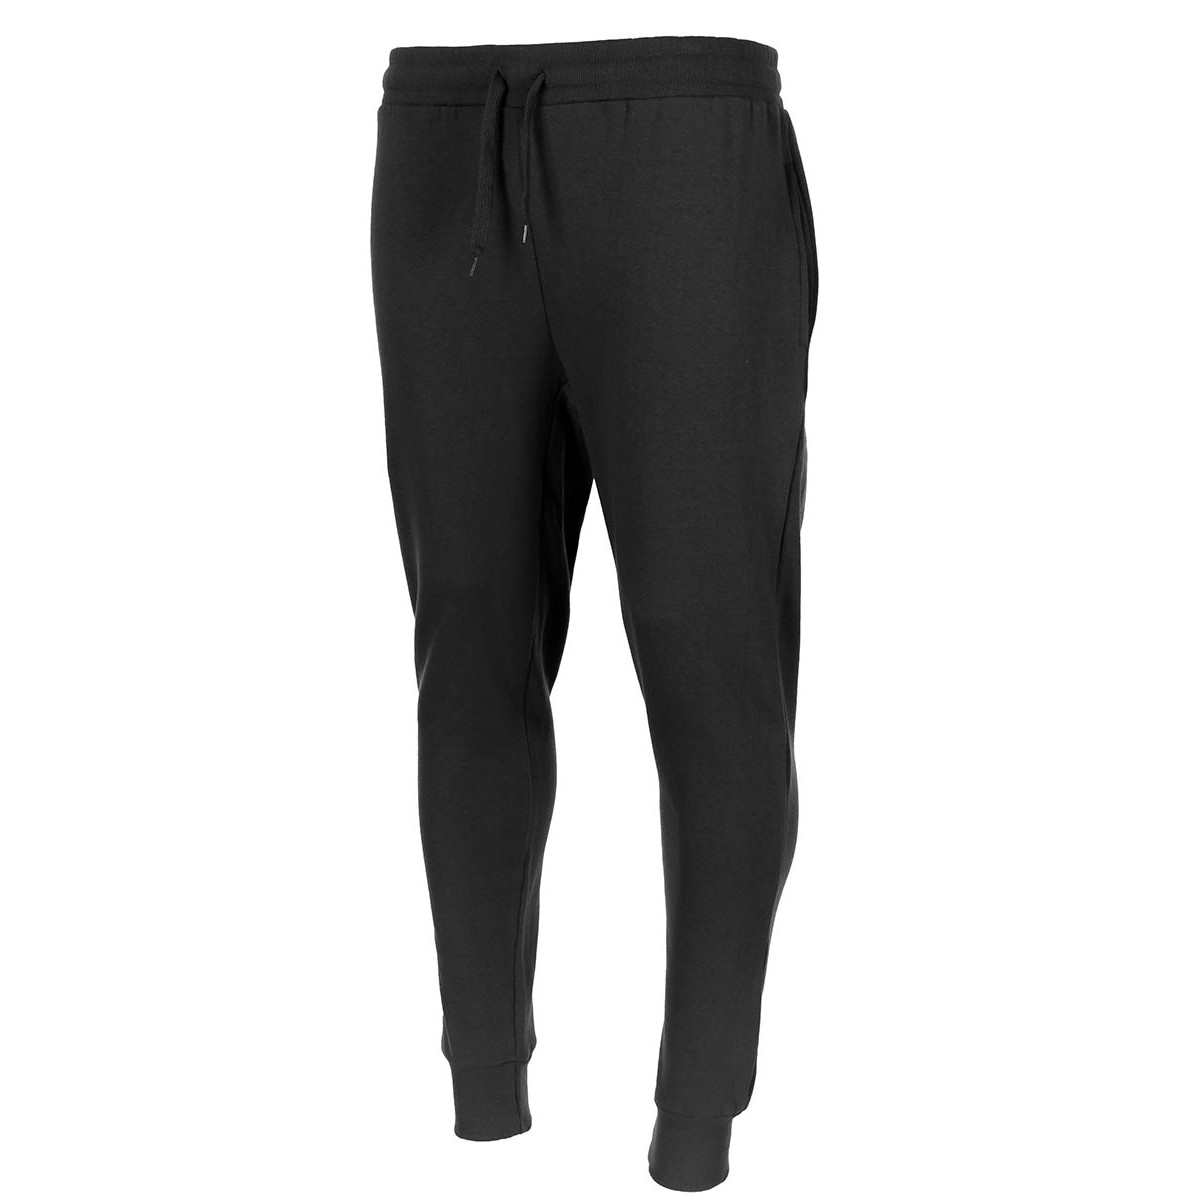 Kalhoty sportovní MFH Jogger - černé, XXL